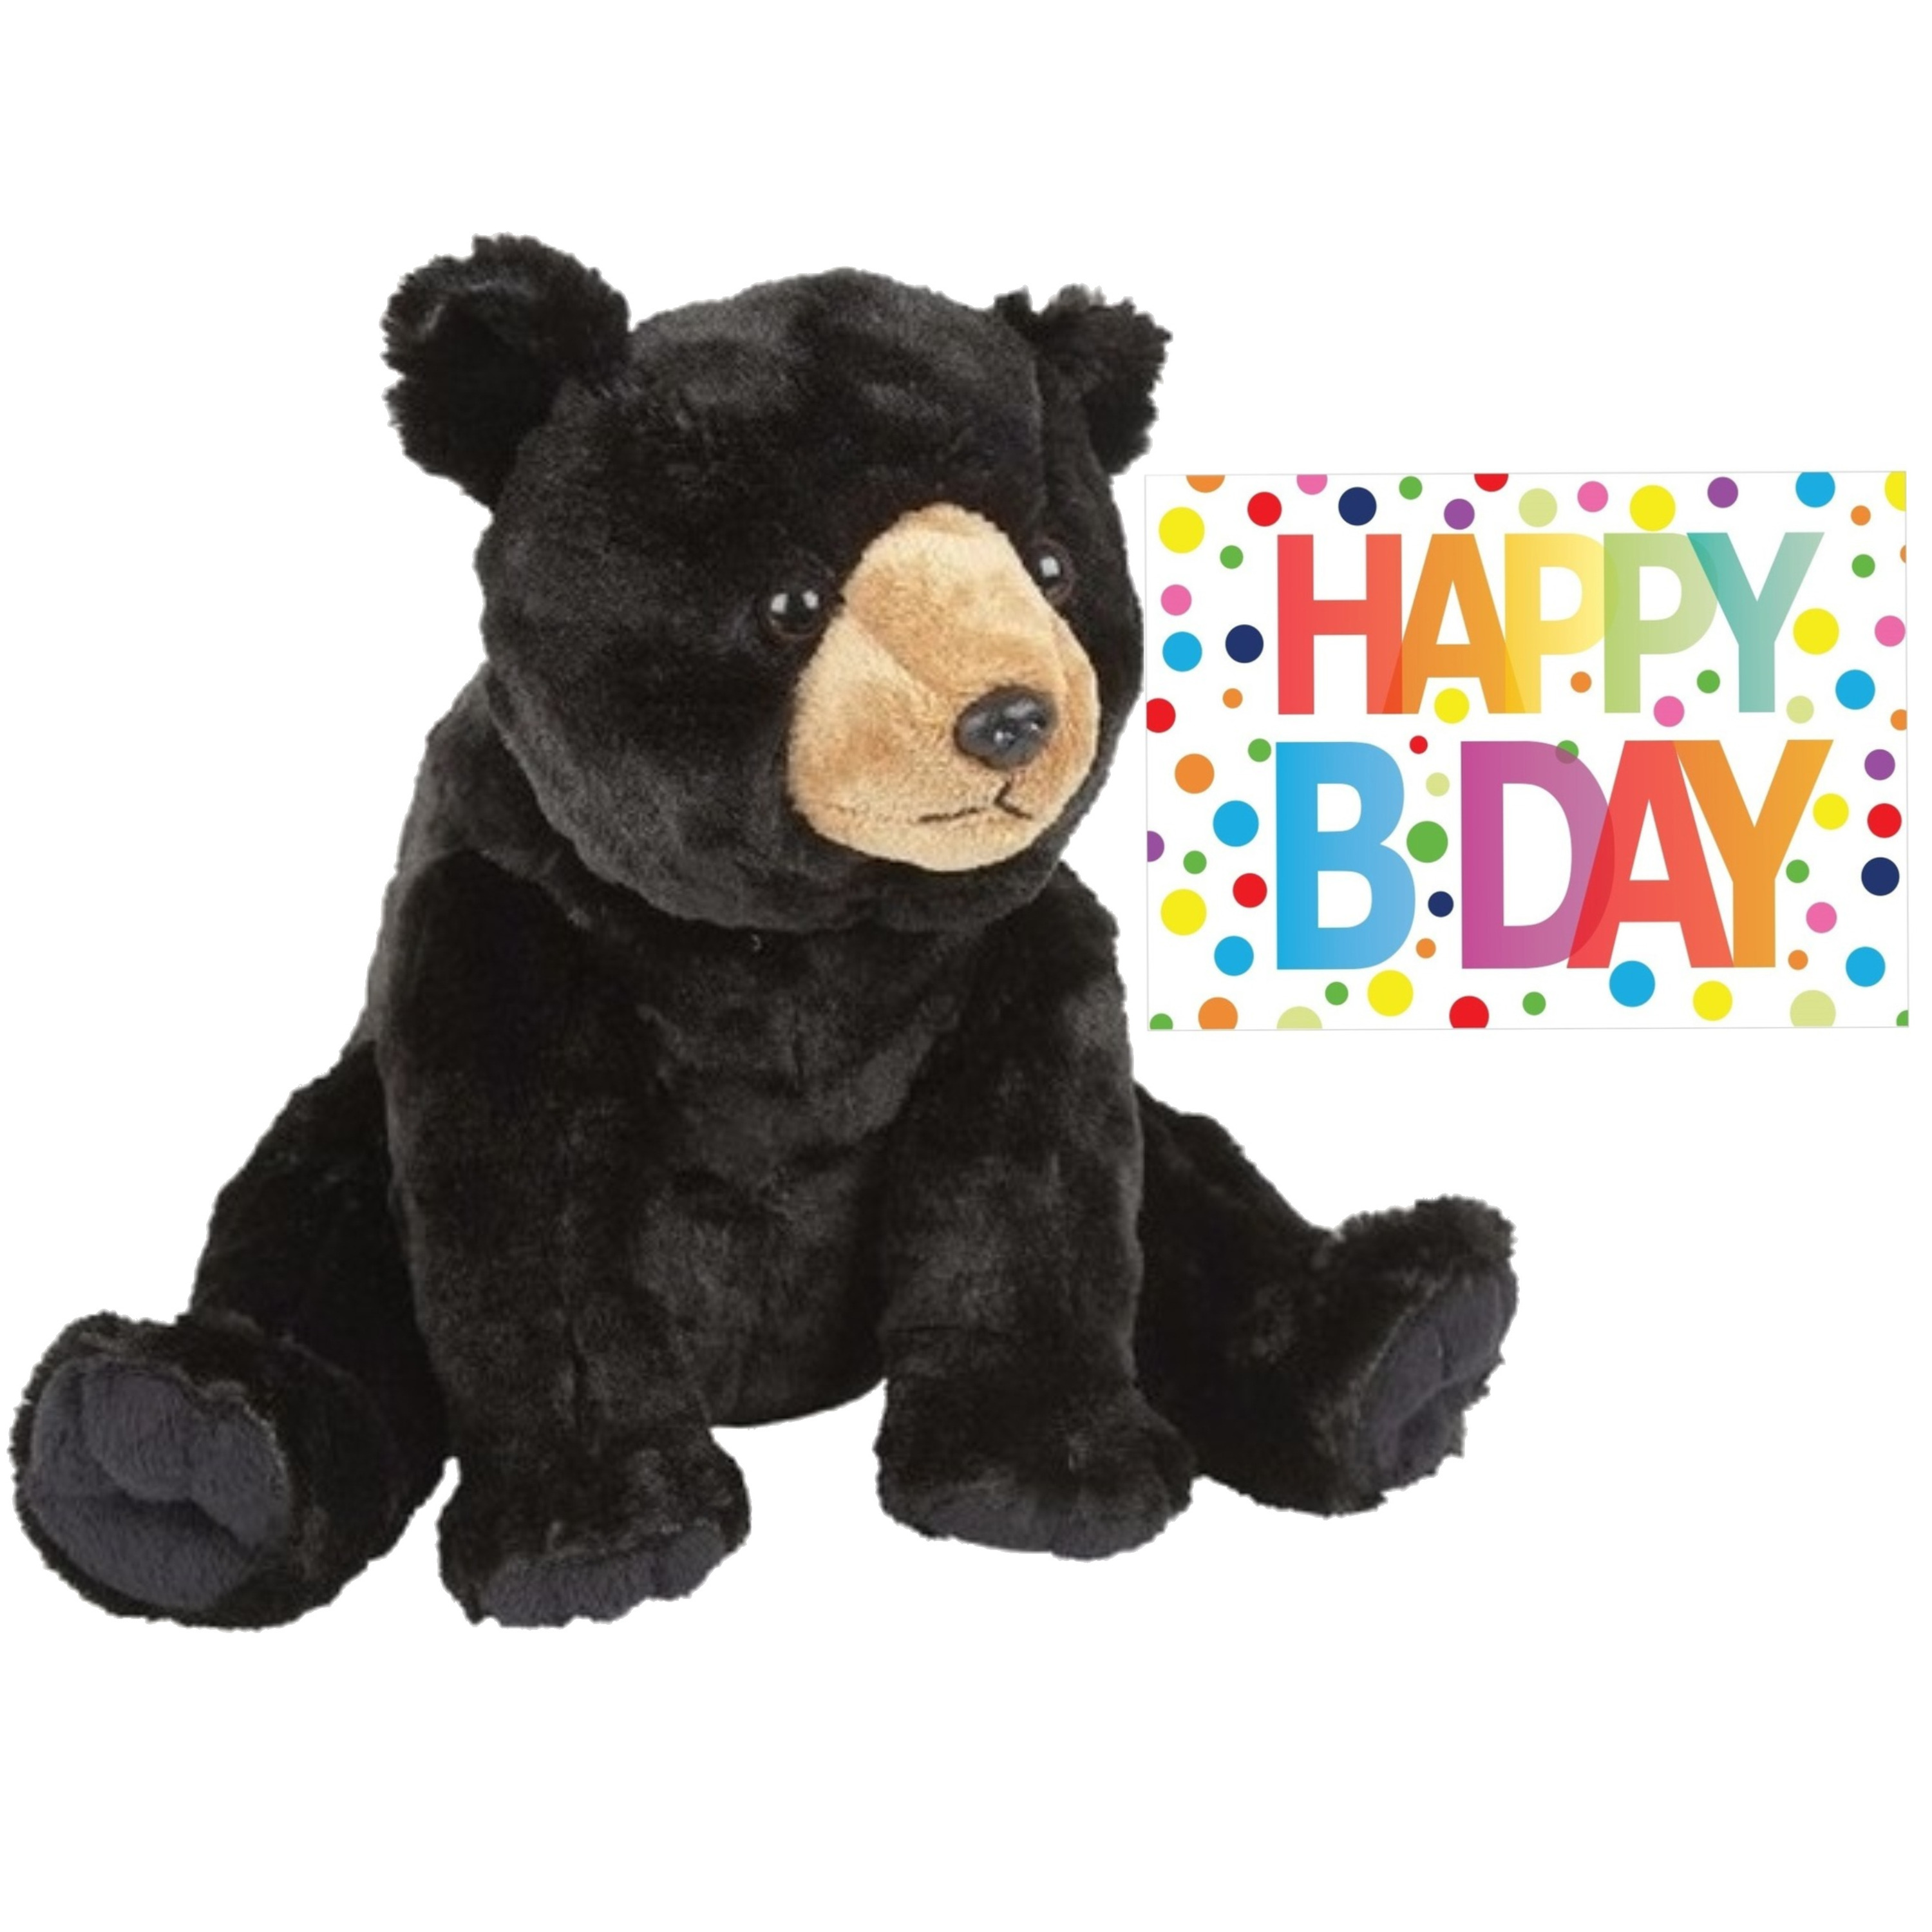 Merkloos Pluche knuffel knuffelbeer 30 cm met A5-size Happy Birthday wenskaart -